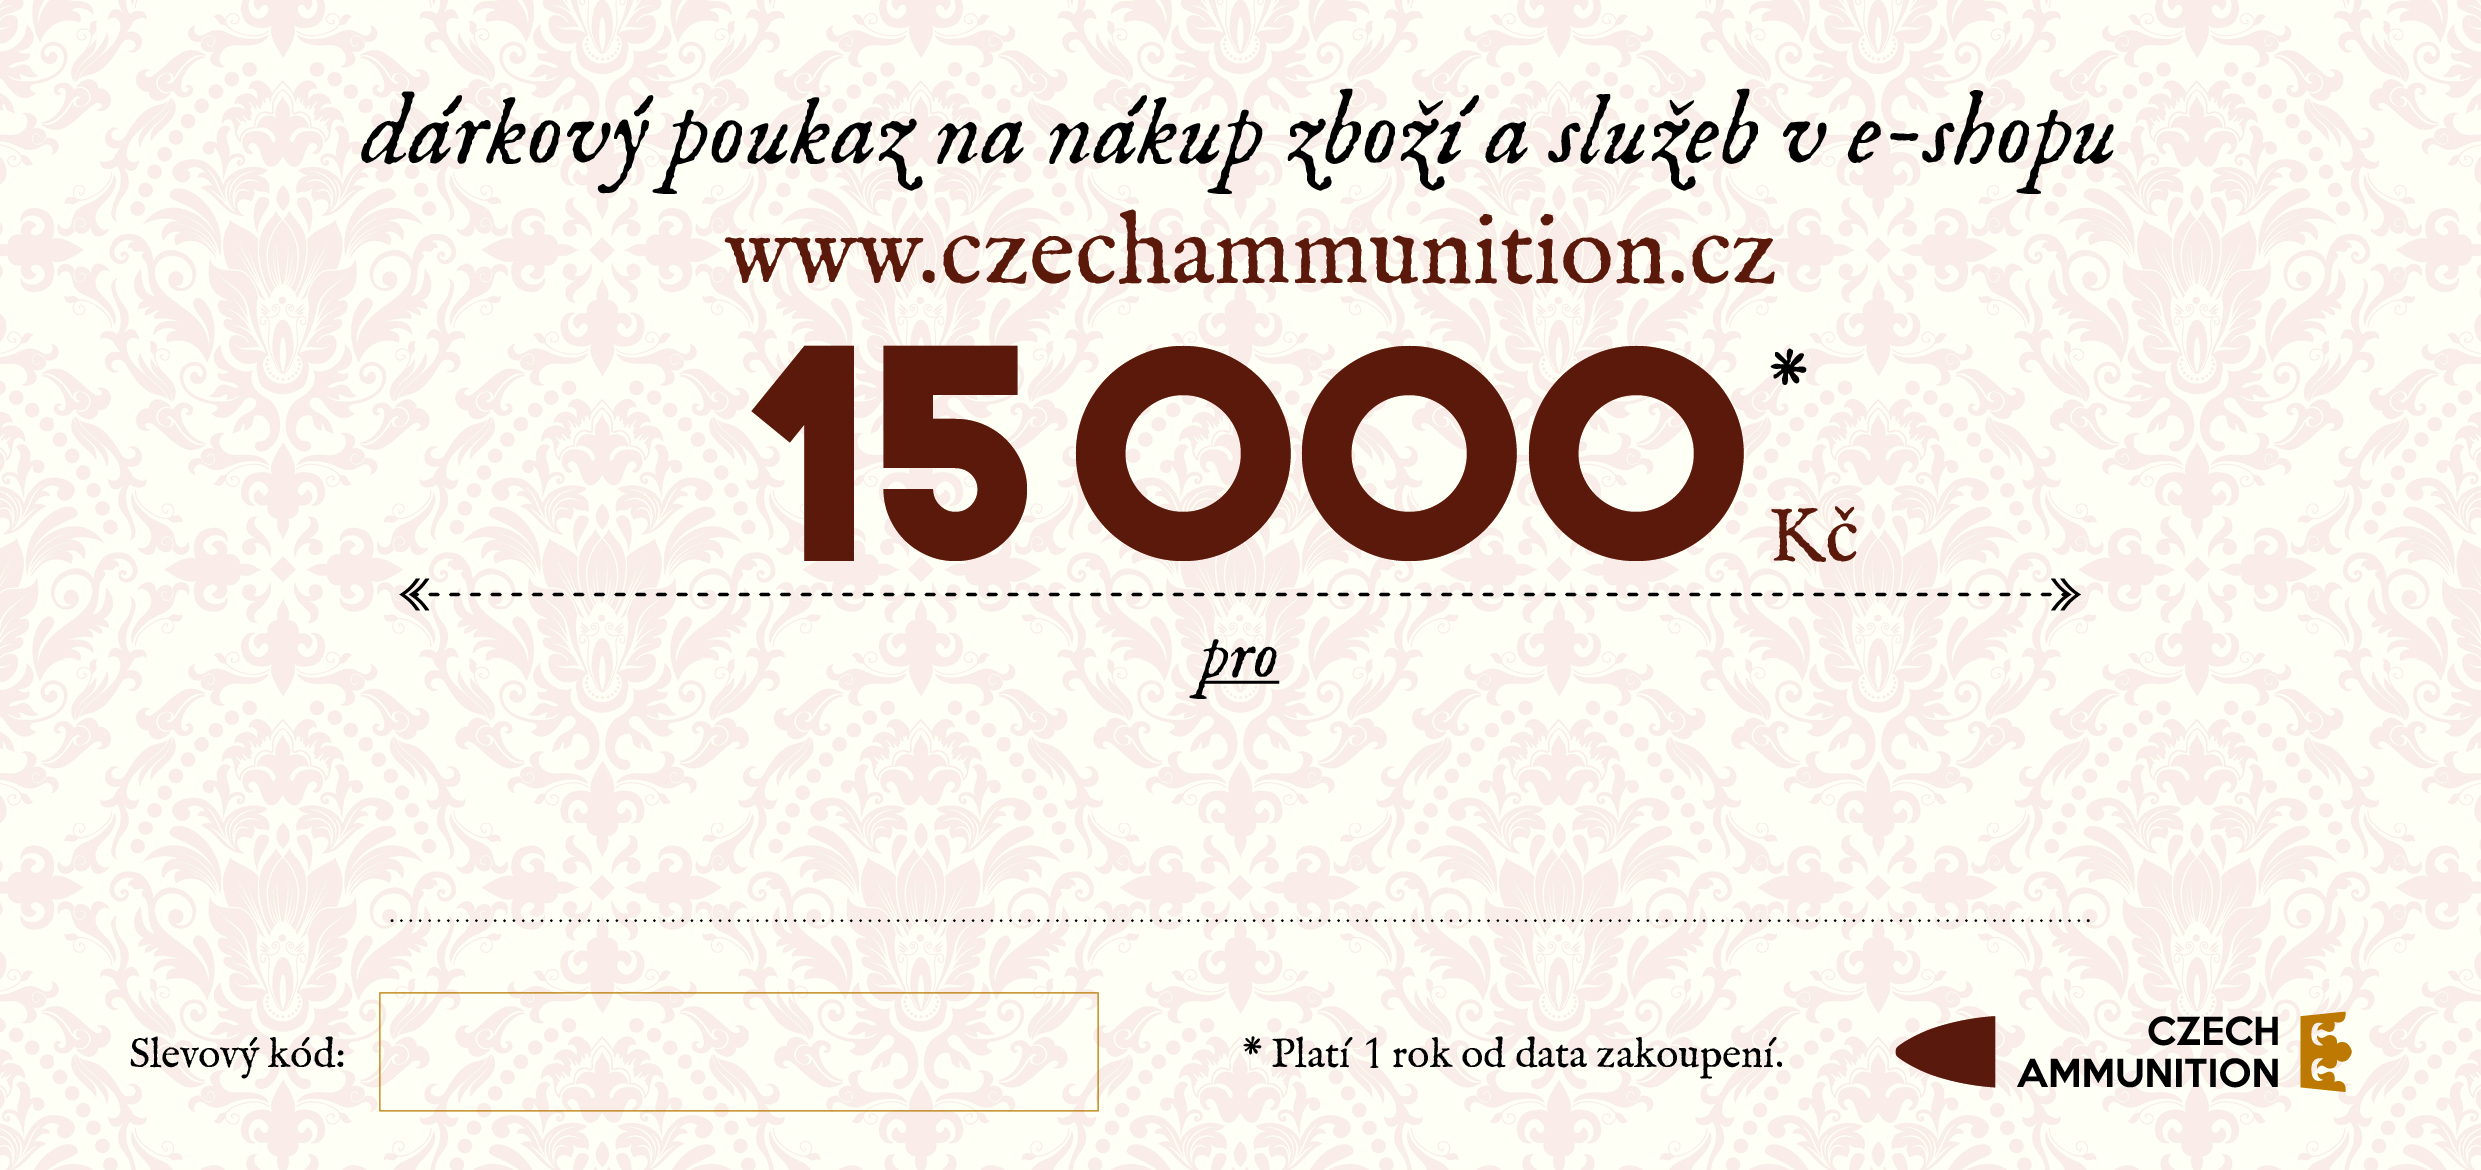 Dárkový poukaz na nákup v e-shopu www.czechammunition.cz v hodnotě 15.000 Kč